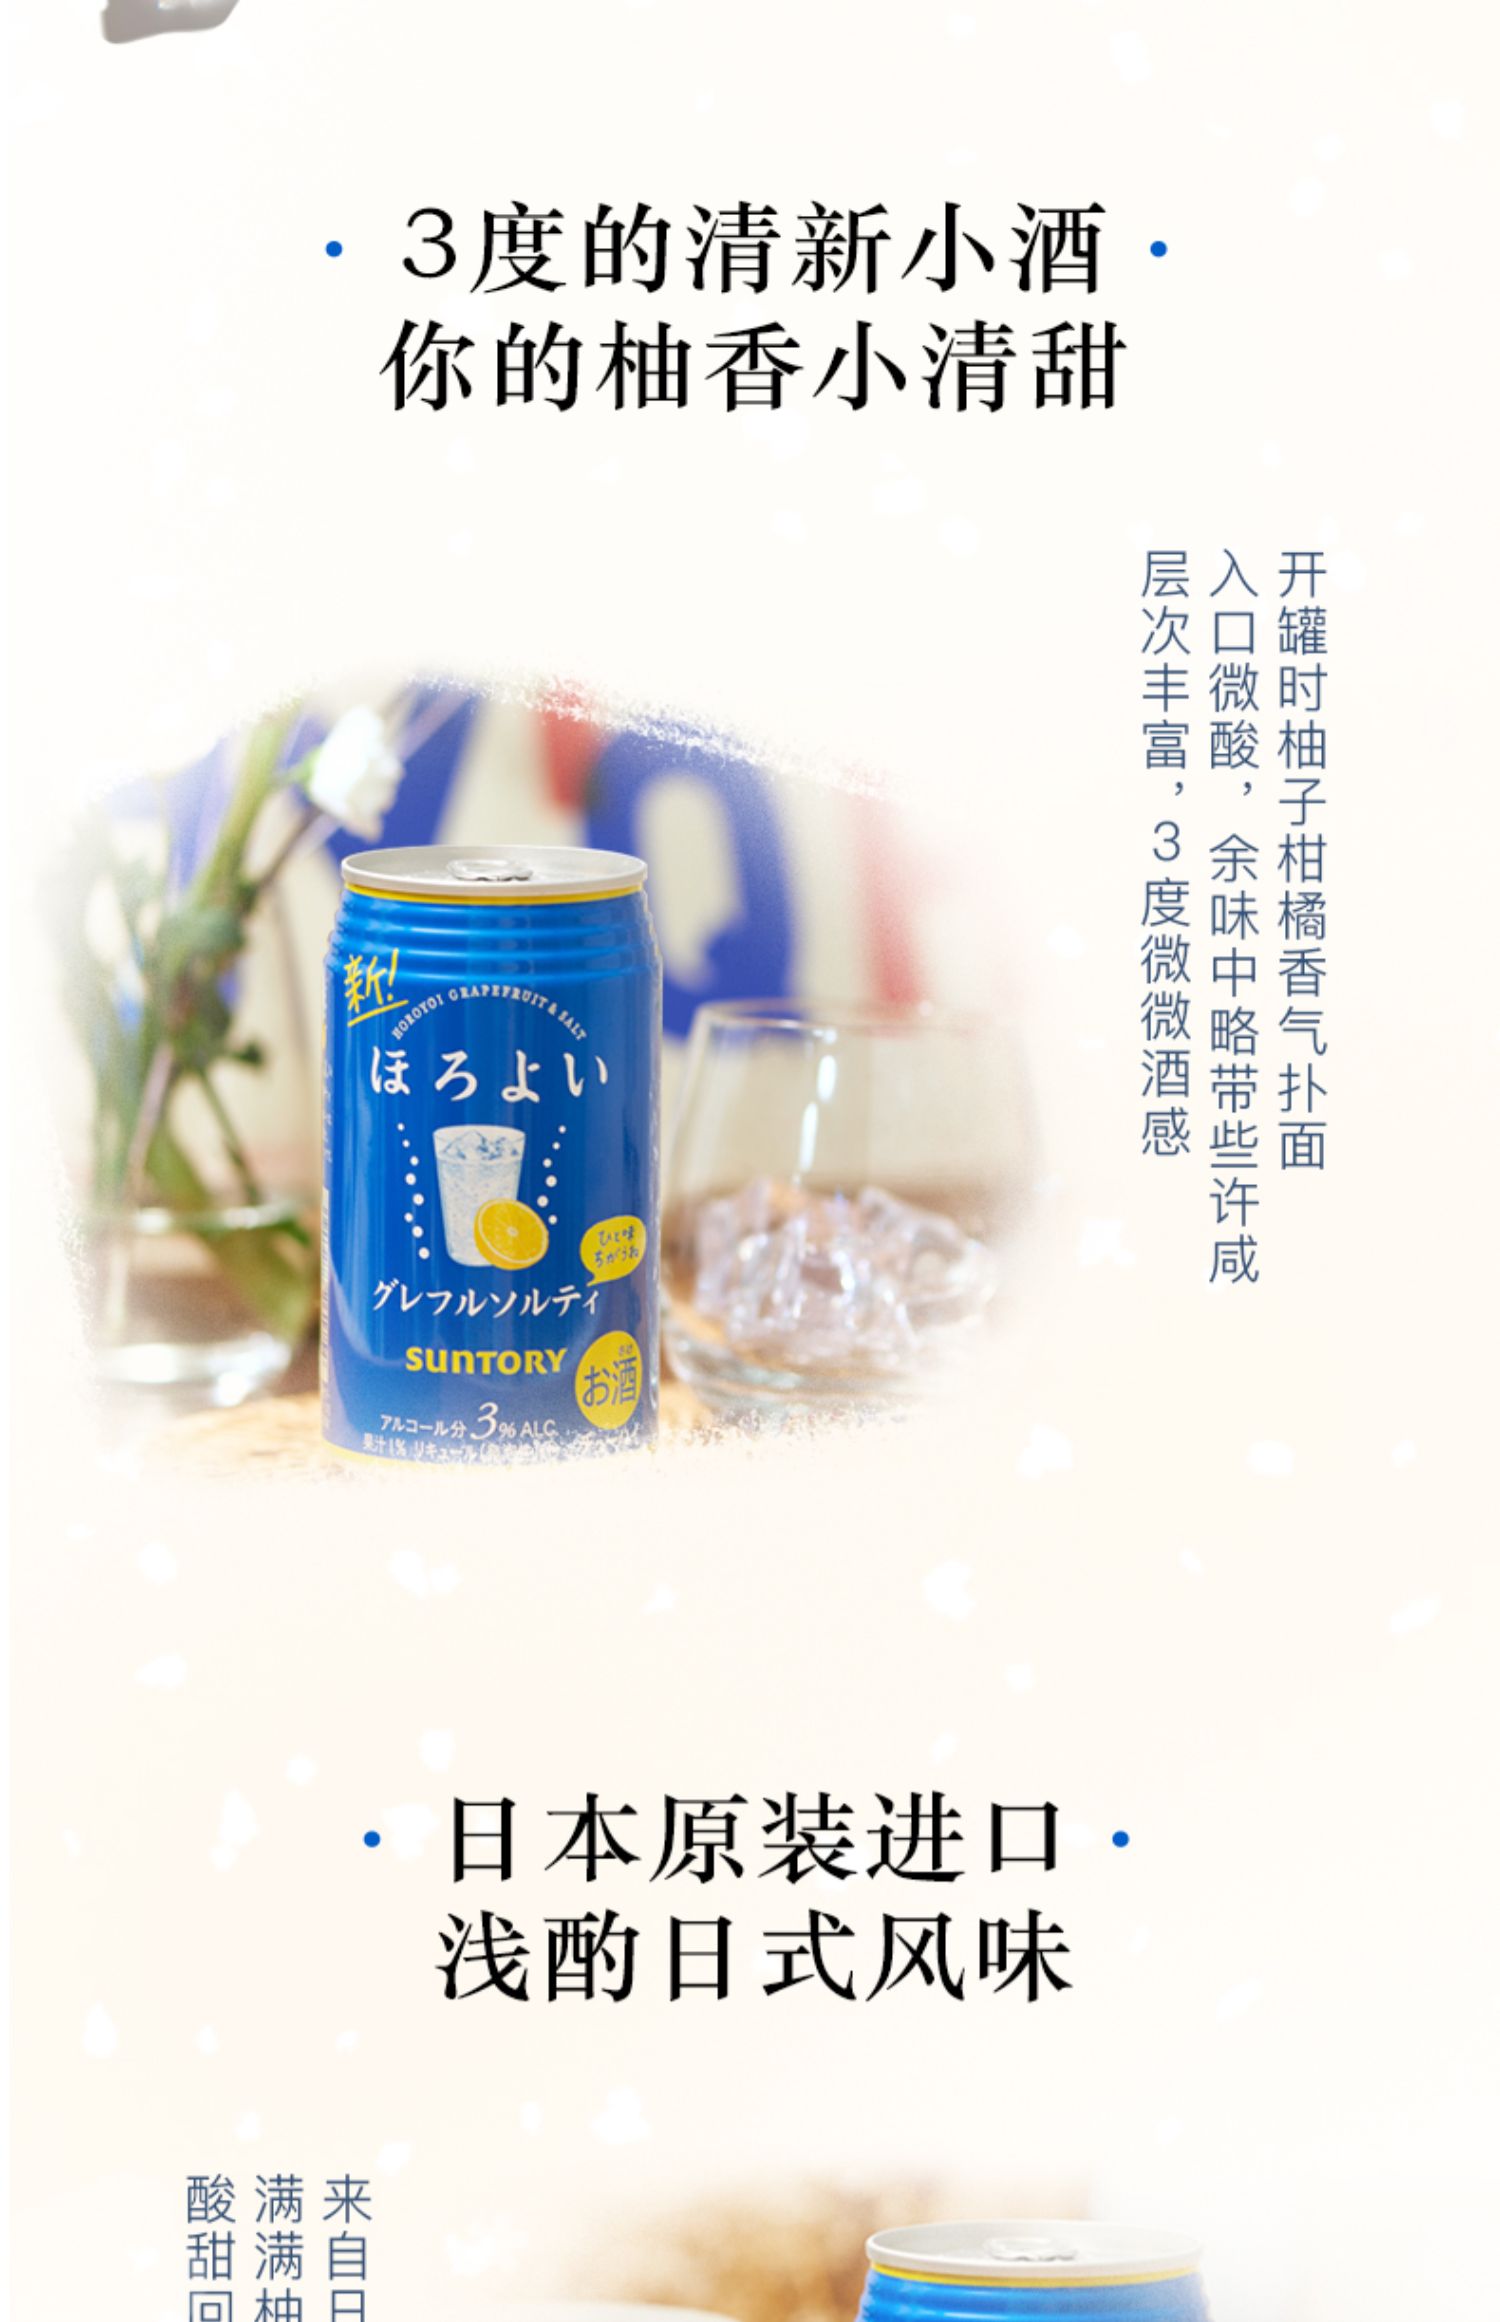 日本三得利和乐怡微醺低度鸡尾酒西柚味6罐